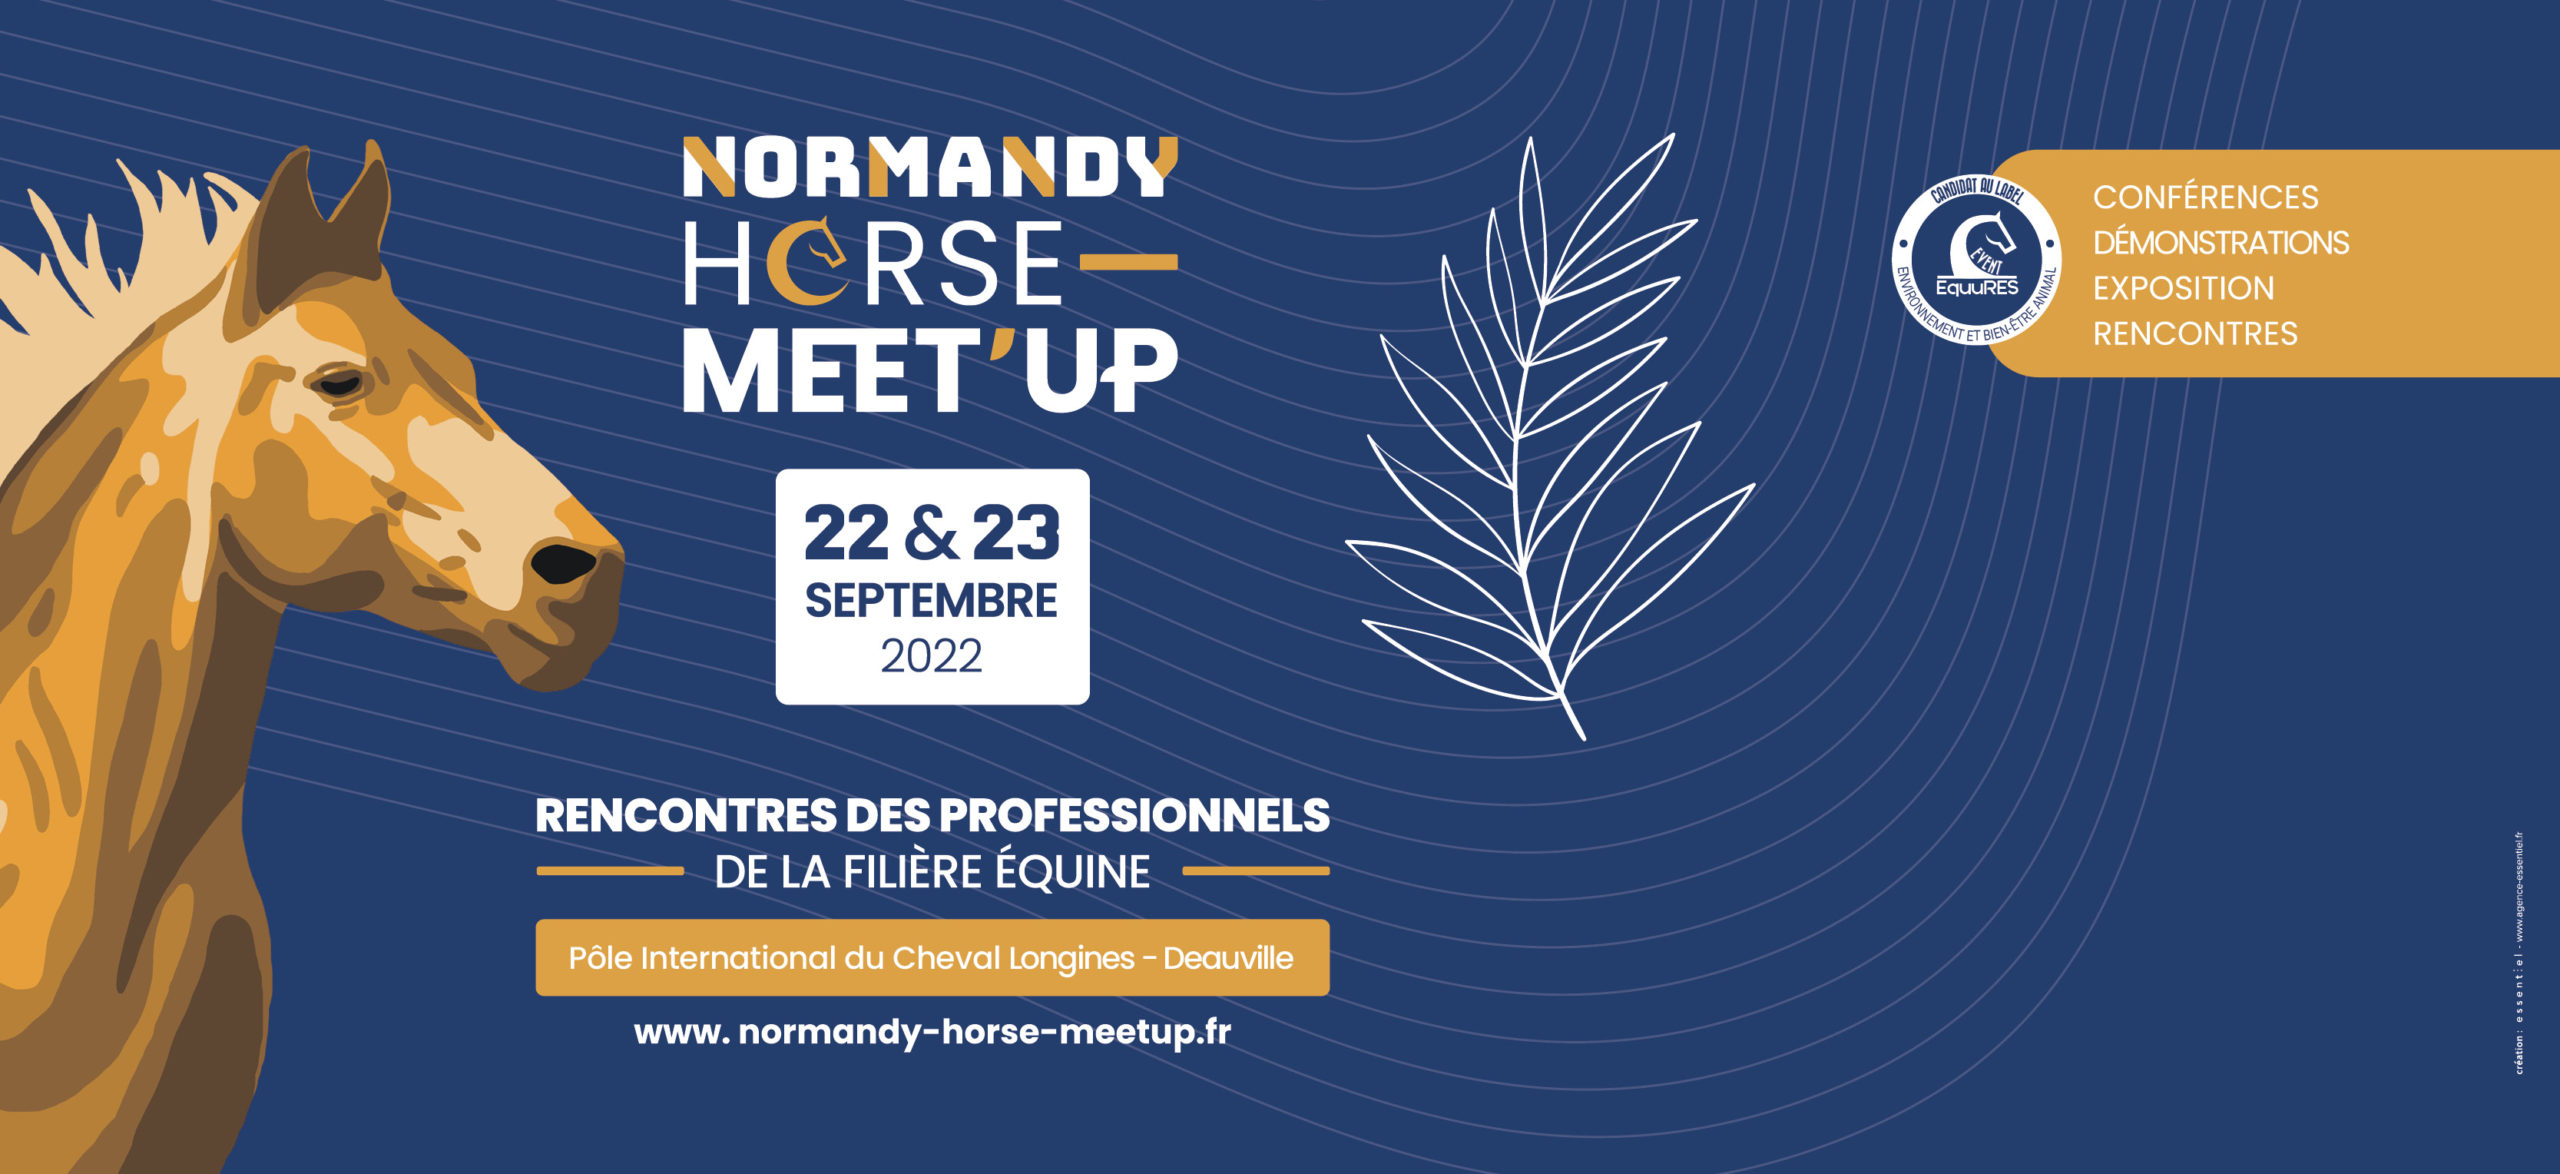 Normandy horse Meet up 2022